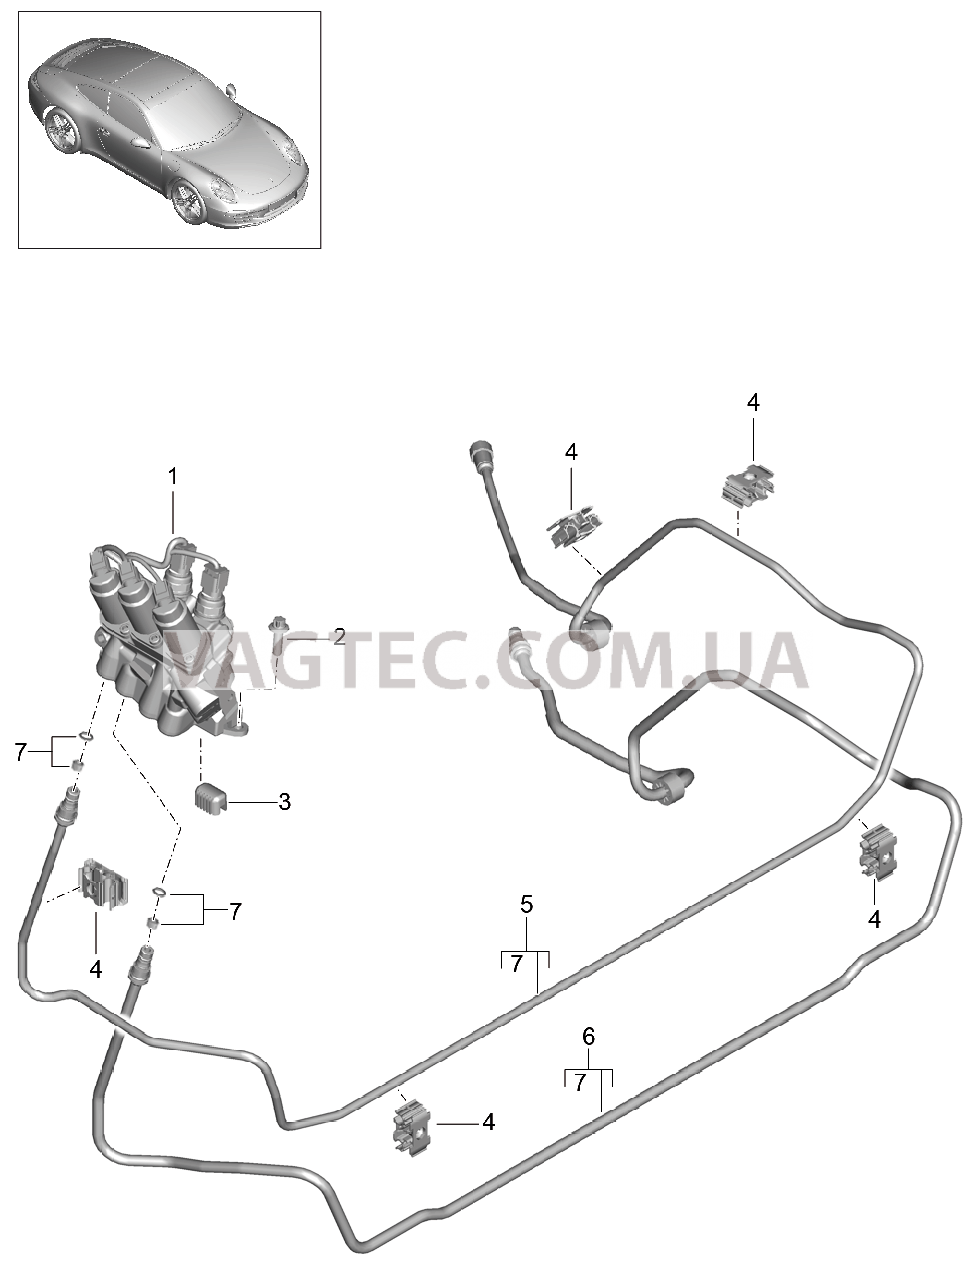 402-020 Линии, Блок клапанов, Передняя часть кузова, PDCC
						
						I031/352 для PORSCHE 911.Carrera 2012-2016USA